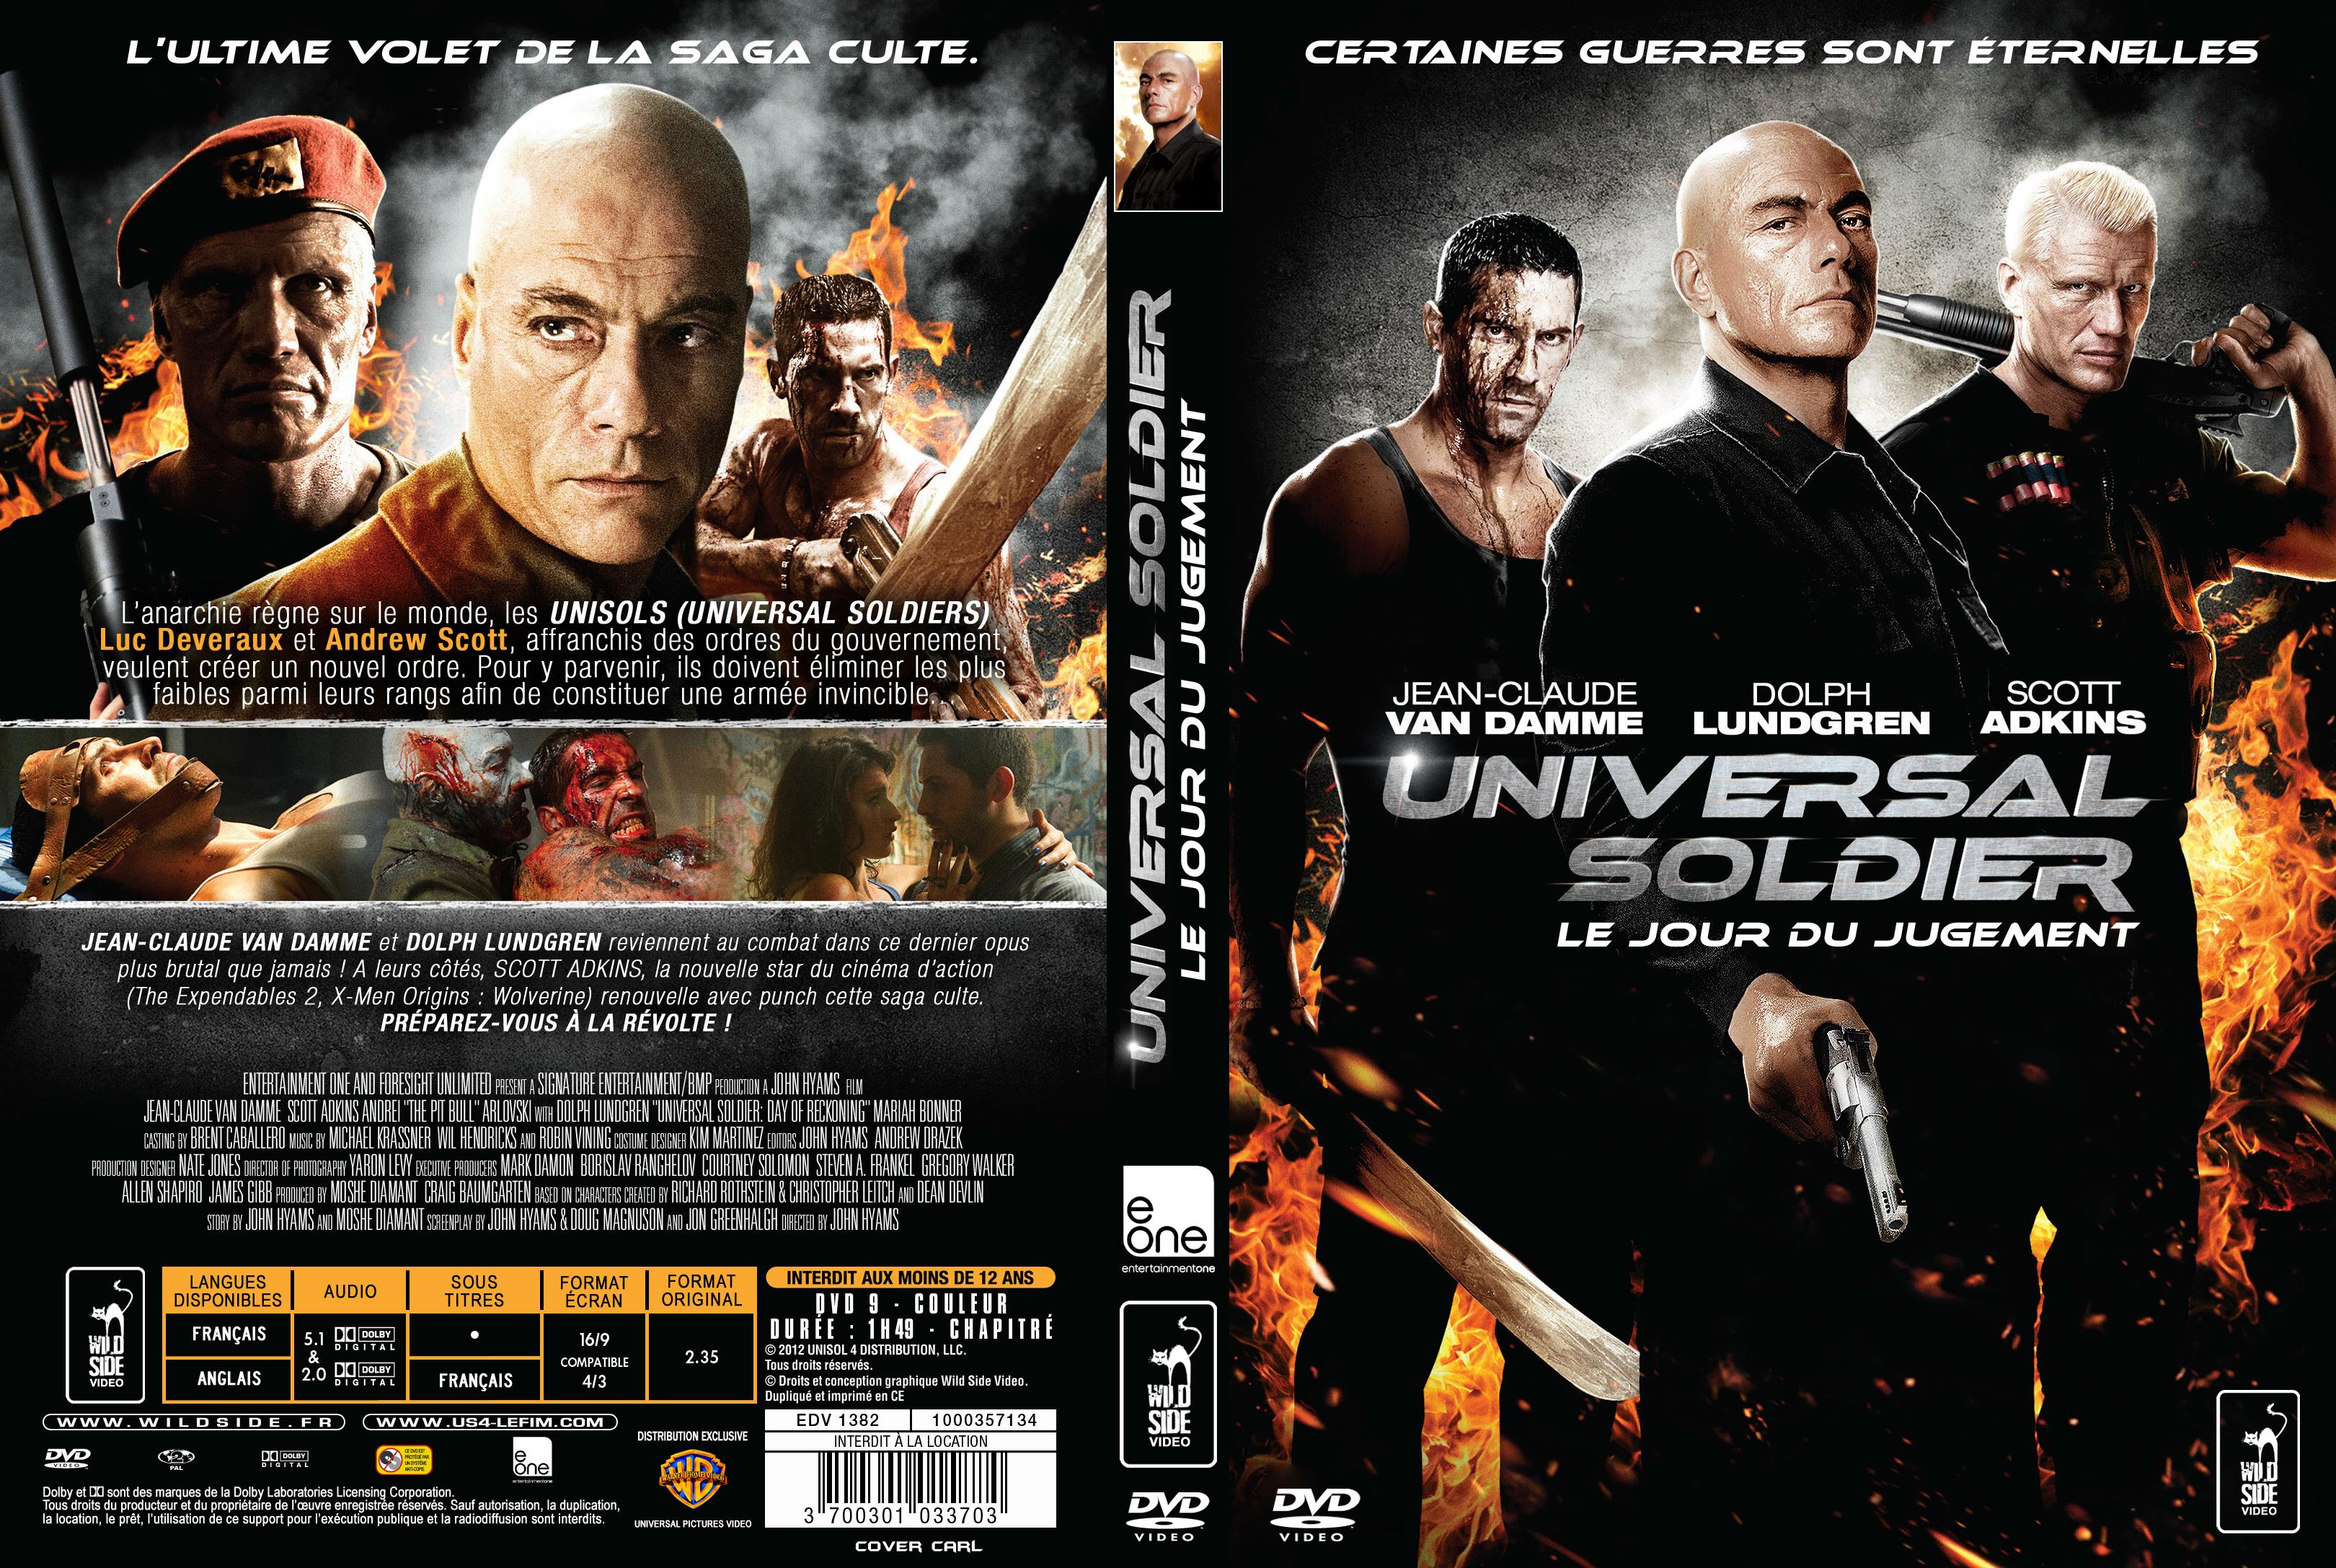 Jaquette DVD Universal Soldier Le Jour du Jugement custom